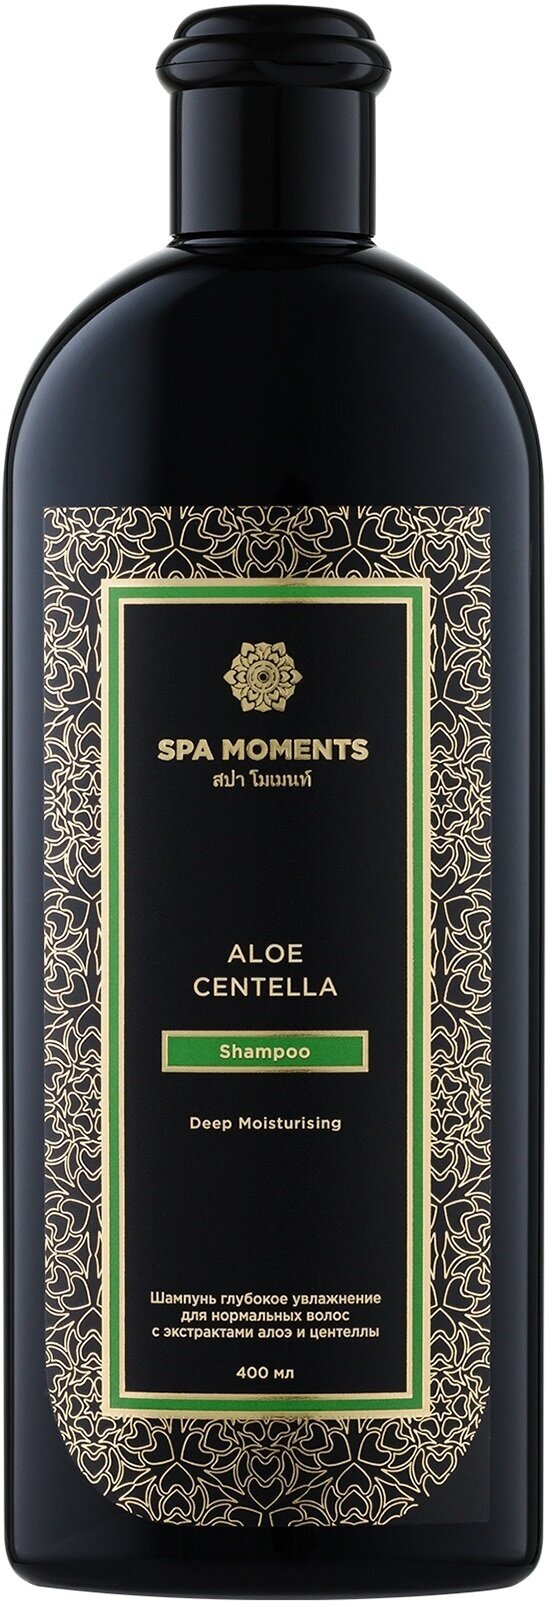 Глубоко увлажняющий шампунь для нормальных волос с экстрактами алоэ и центеллы азиатской Spa Moments Deep Moisturising Shampoo with Aloe & Centella 400 мл .